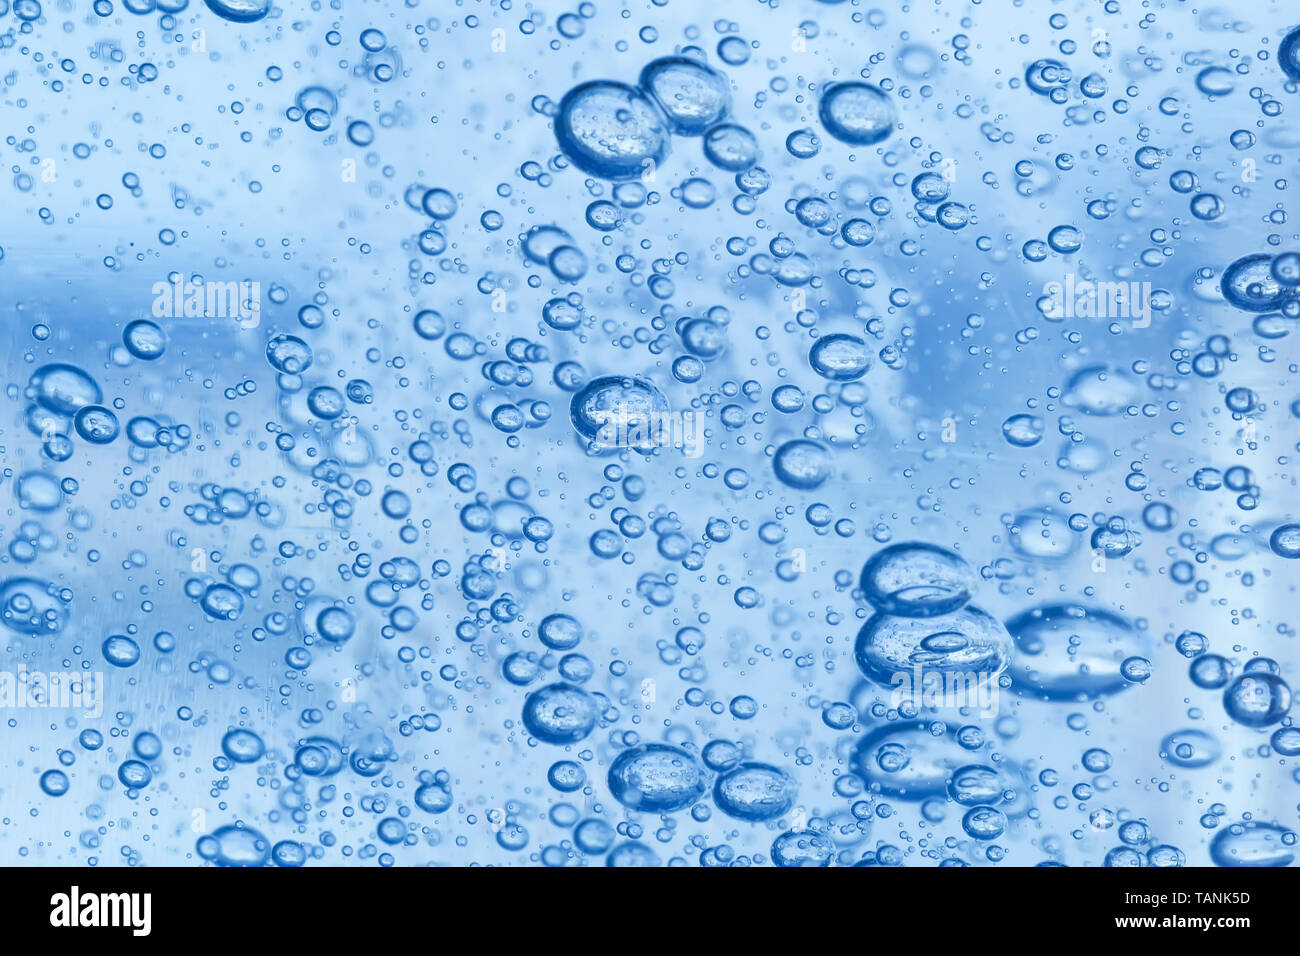 Luftblasen in einem dicken blauen Gel. Zusammenfassung Hintergrund. Stockfoto